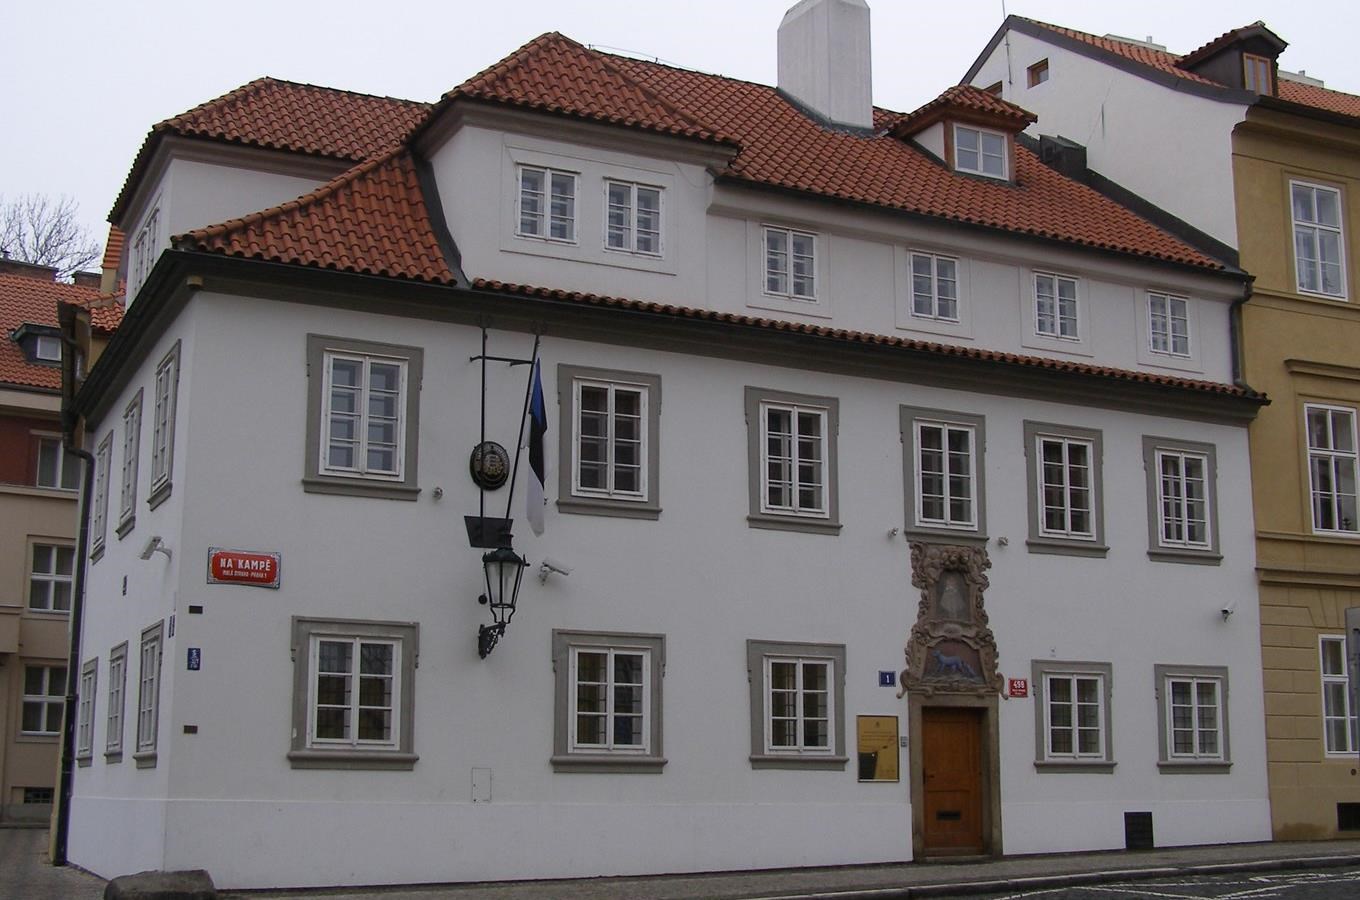 Dům U Modré lišky - bývalé bydliště Jiřího Voskovce, současné sídlo ambasády Estonska